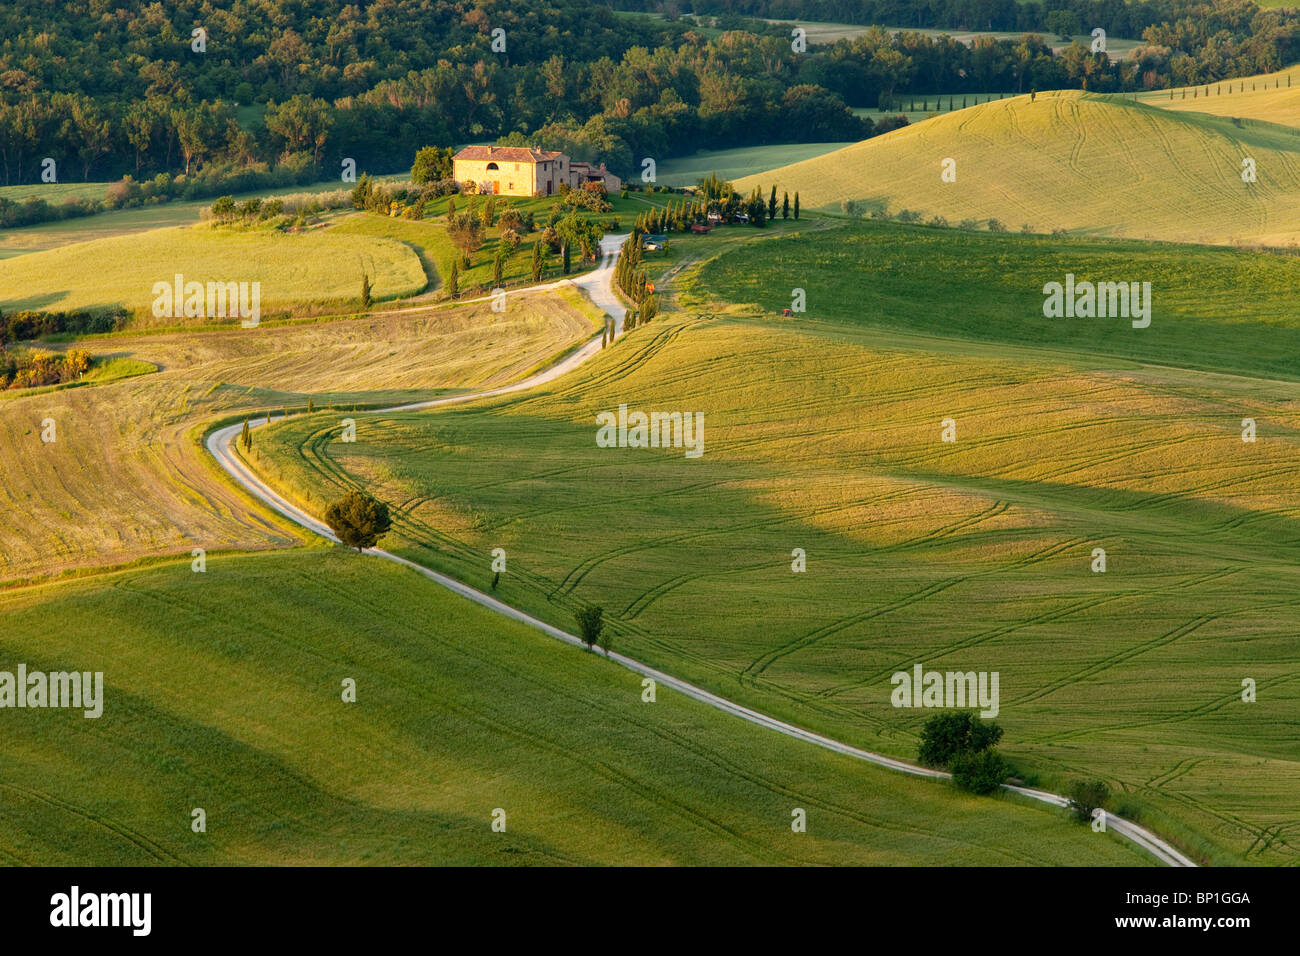 Country road leading to Tuscan villa near Pienza, Tuscany Italy Stock Photo